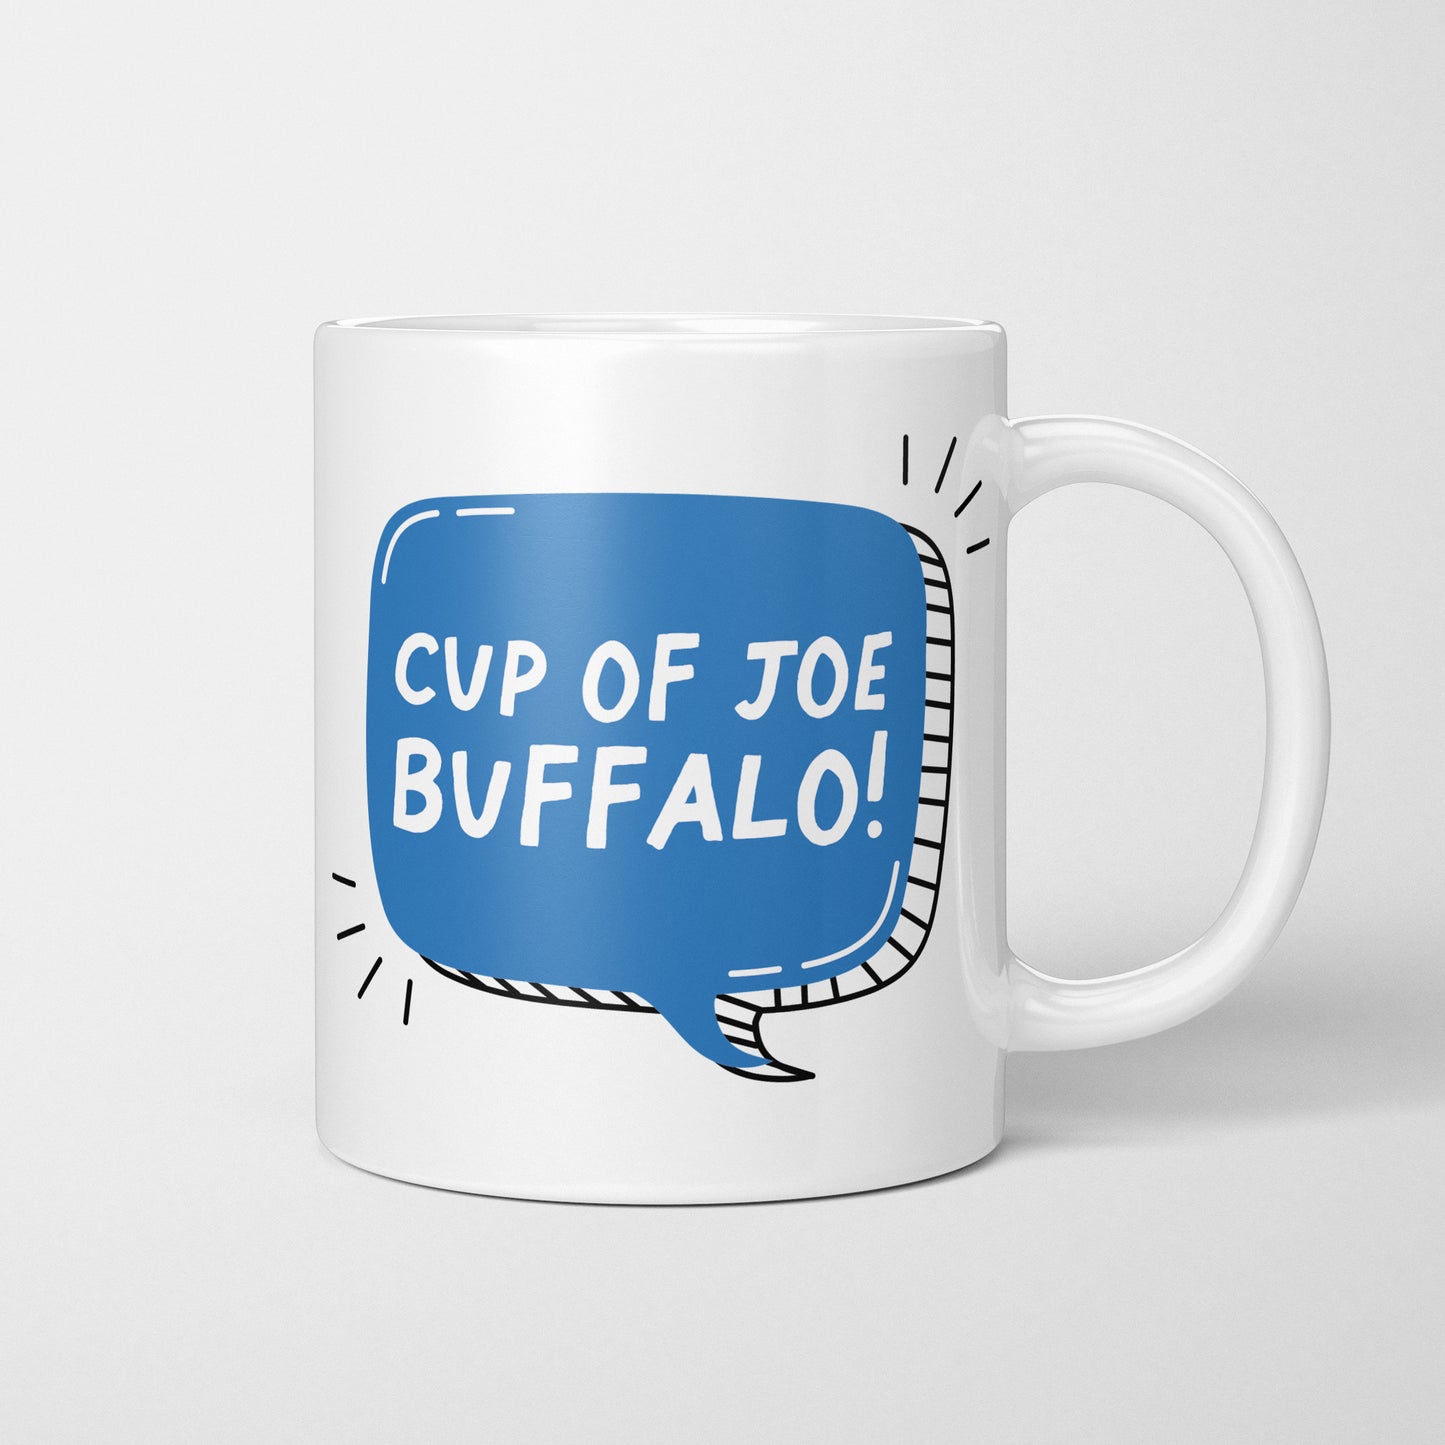 Cup of Joe Buffalo 11oz Mug